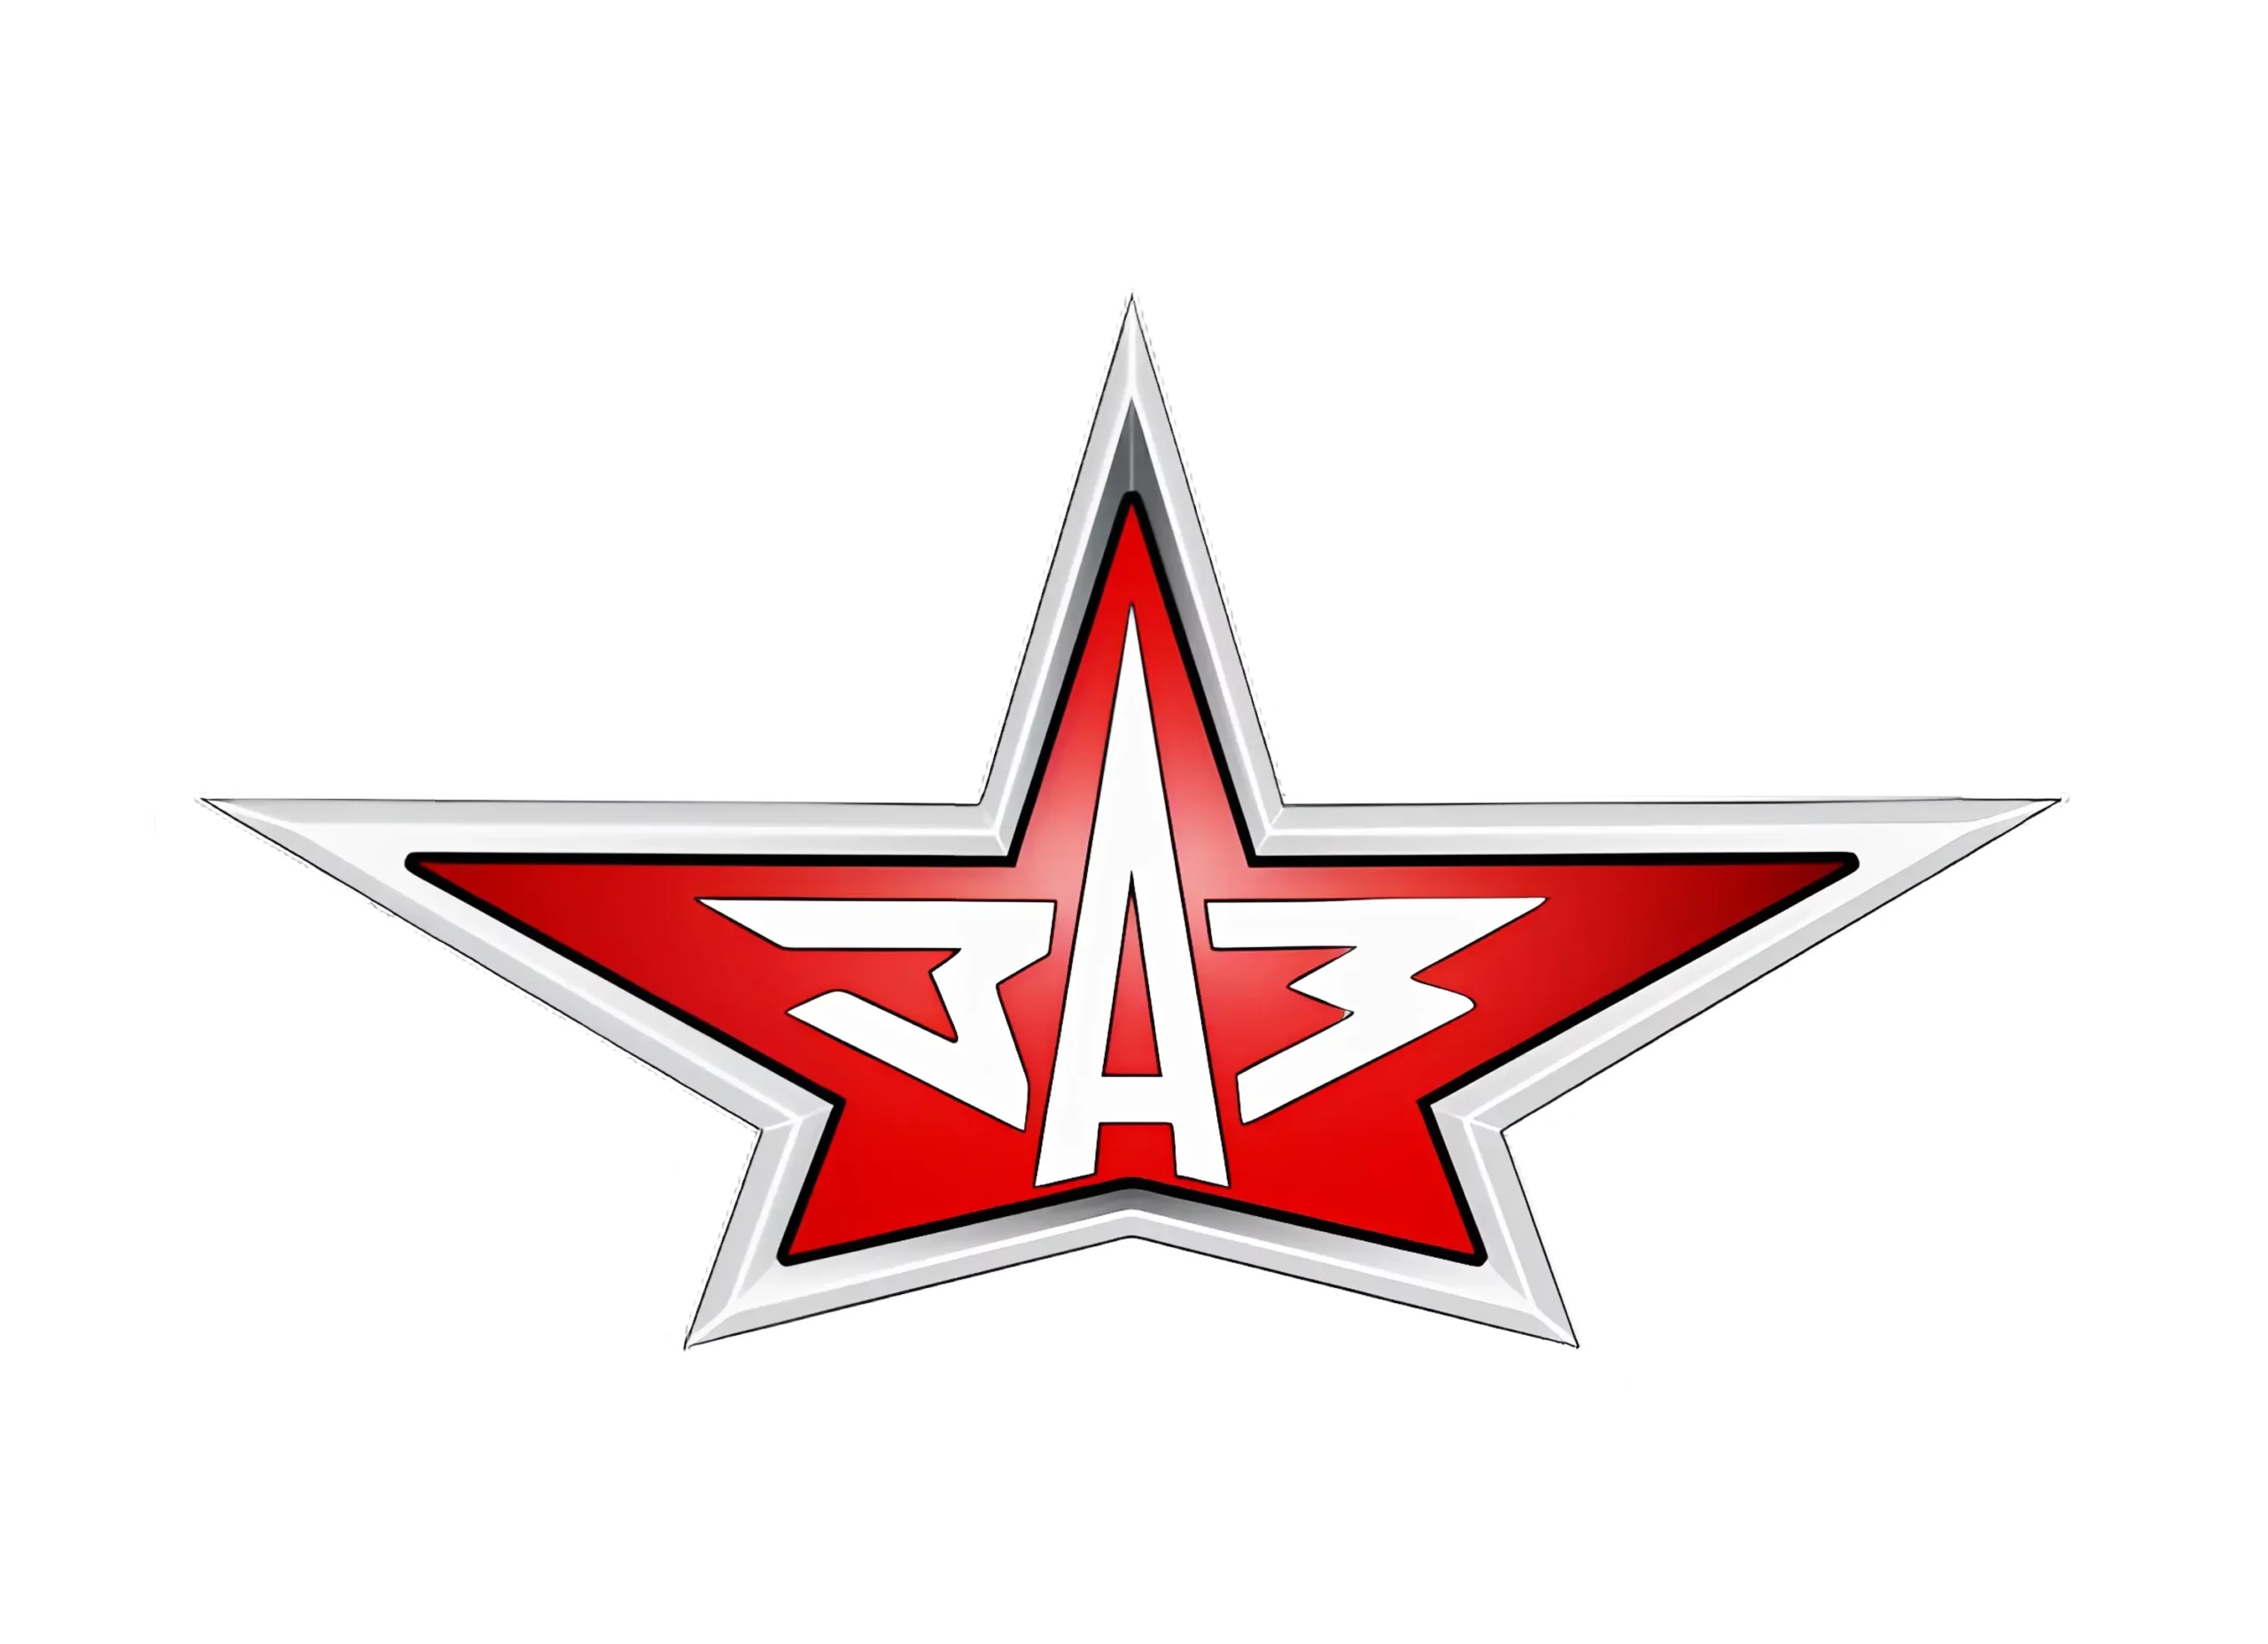 ZAZ logo 1960-1964